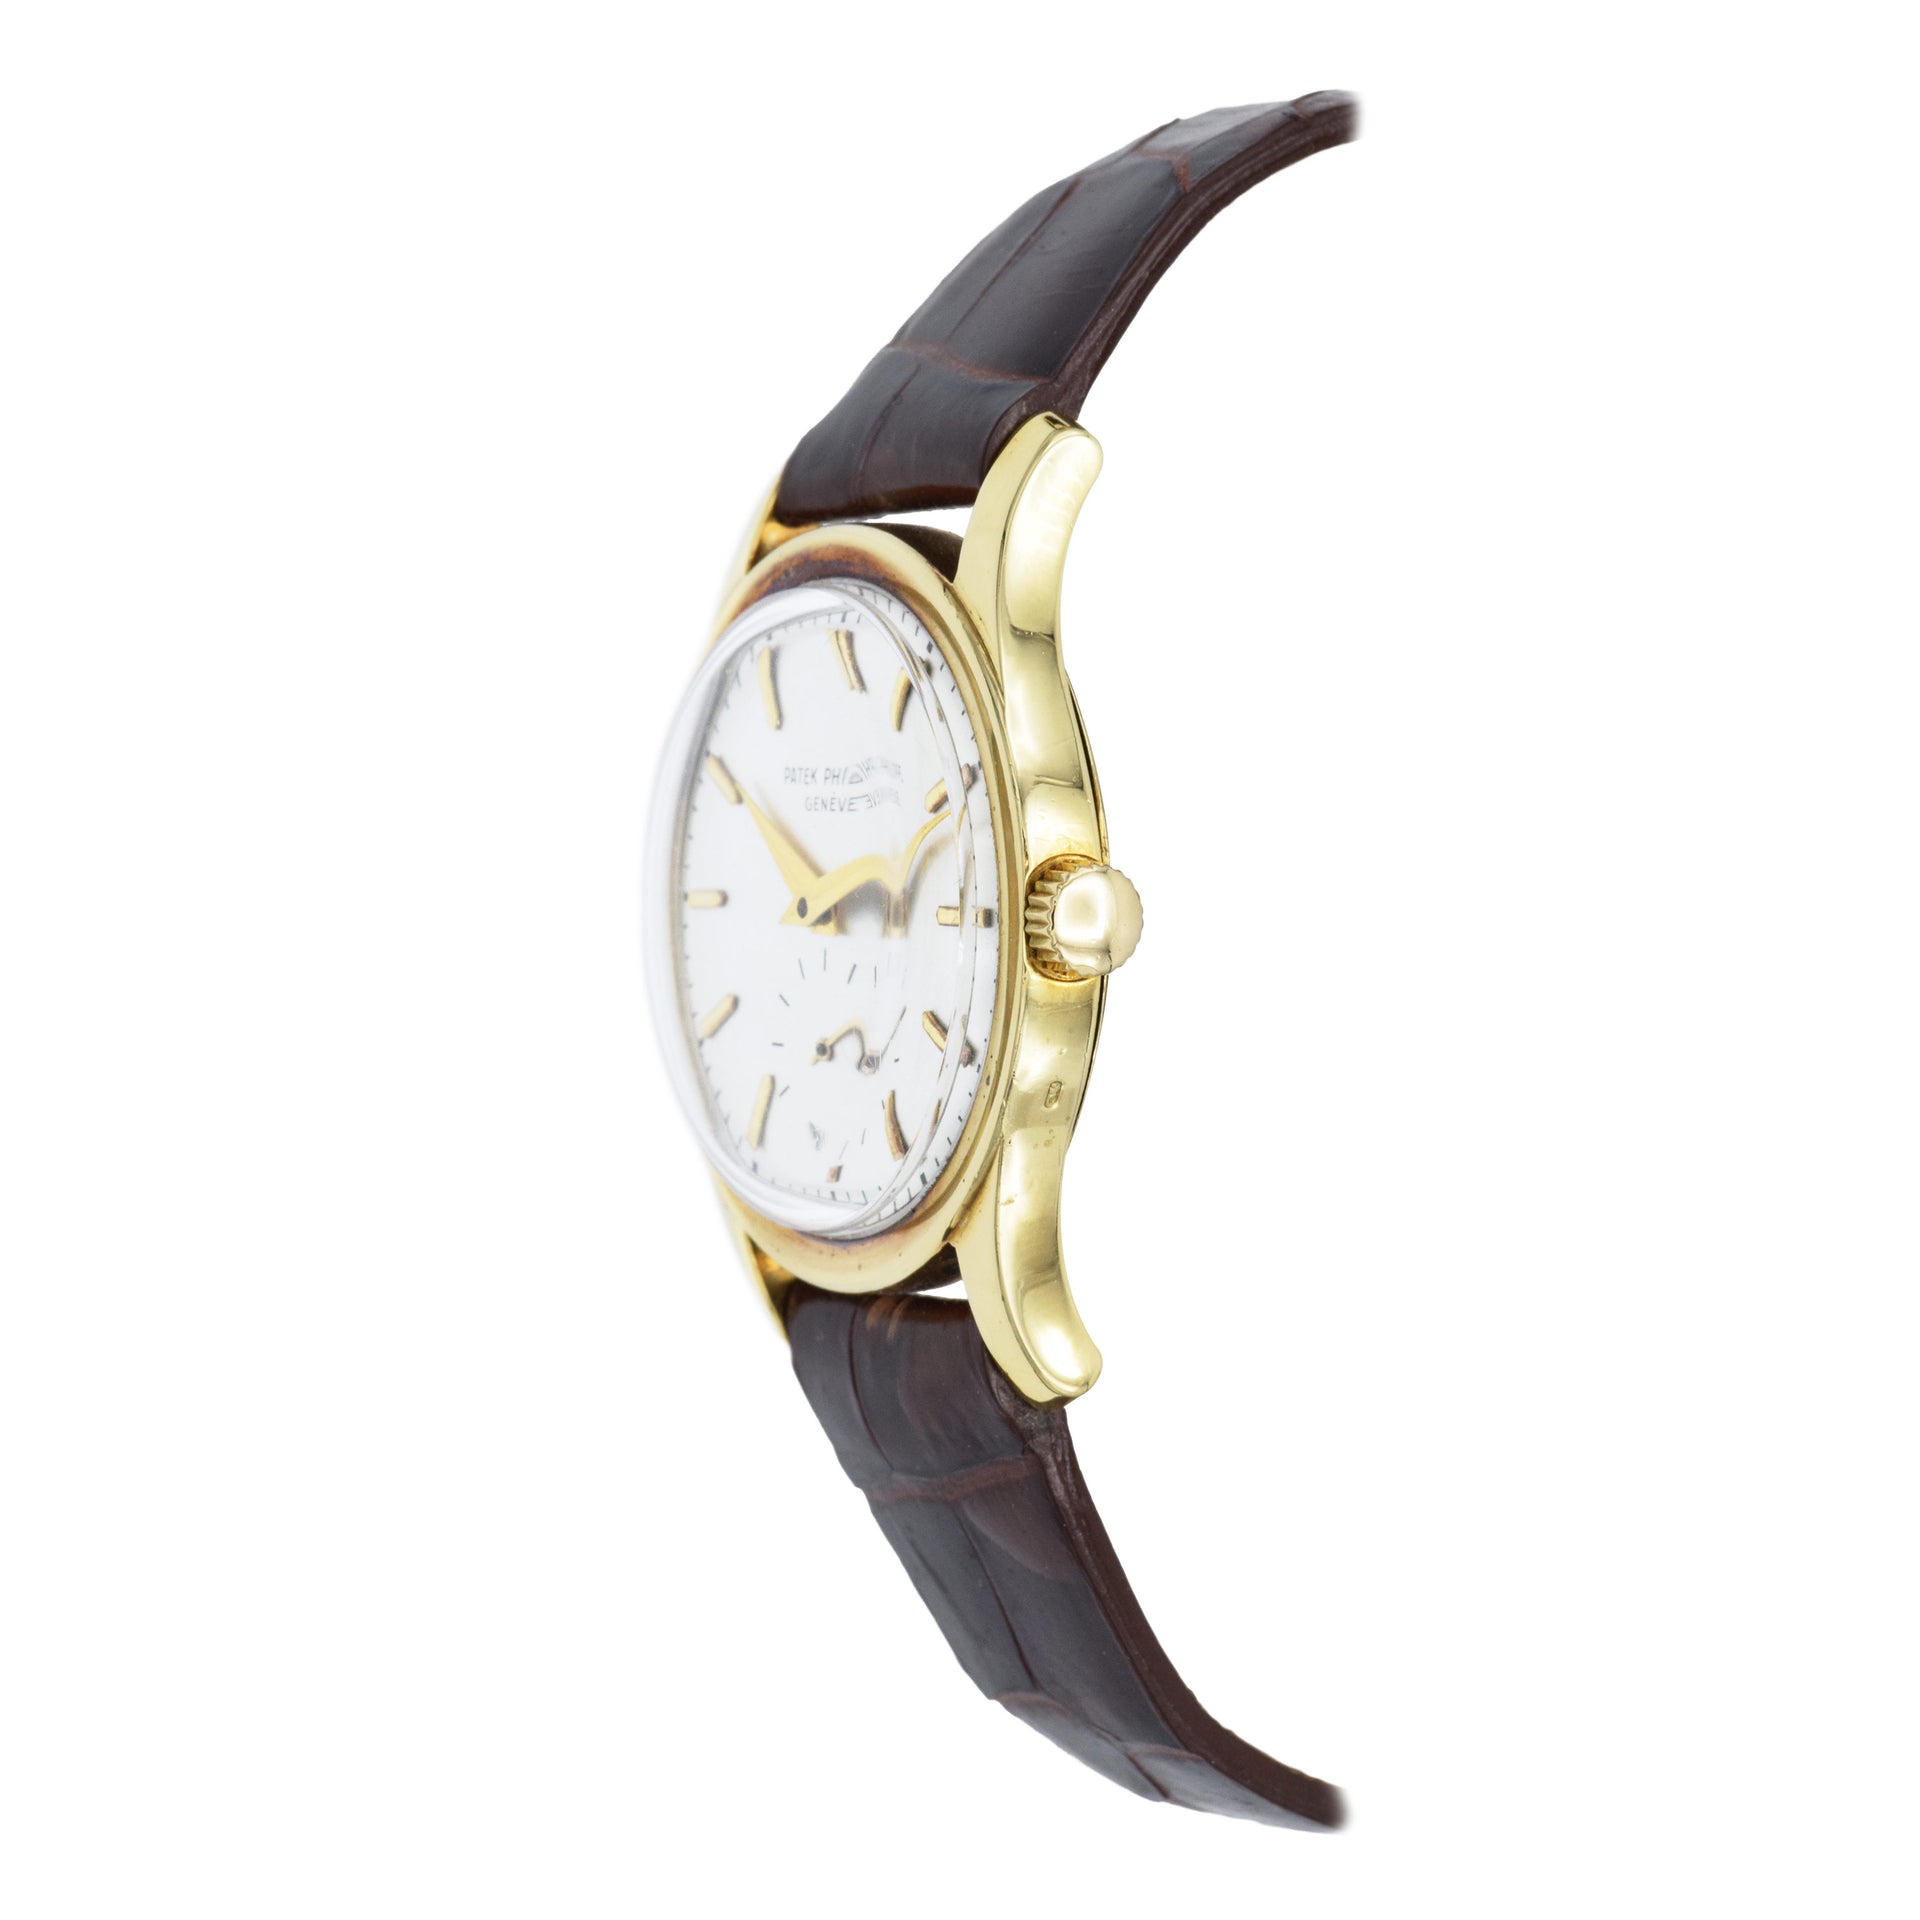 Vintage 1950 Patek Philippe Watch